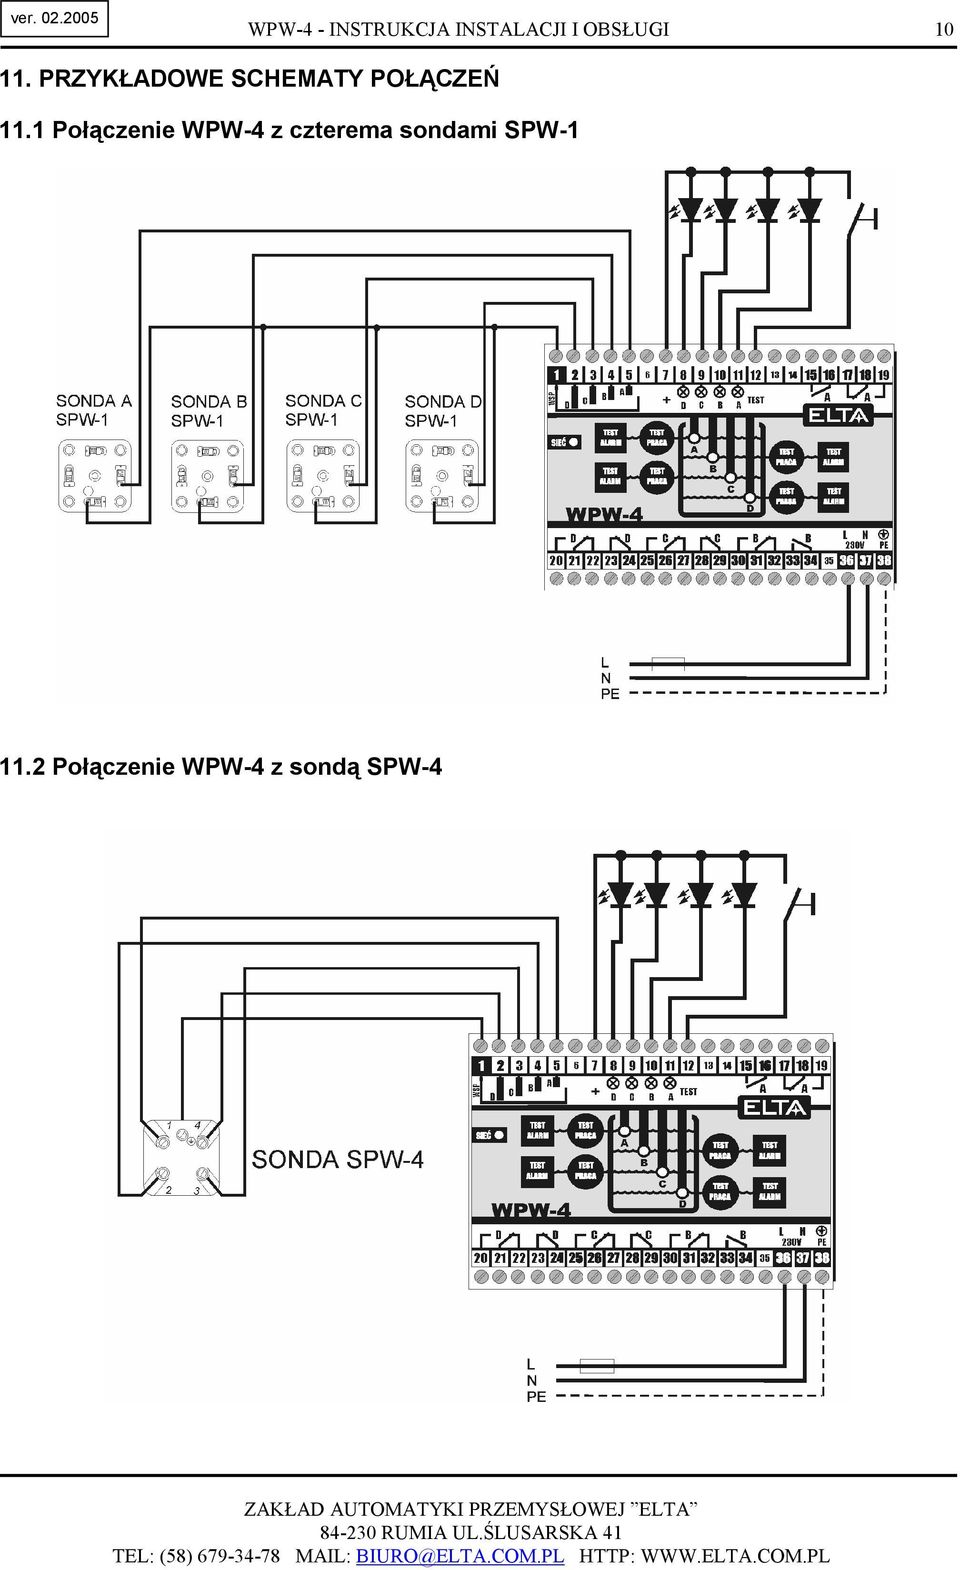 1 Połączenie WPW-4 z czterema sondami